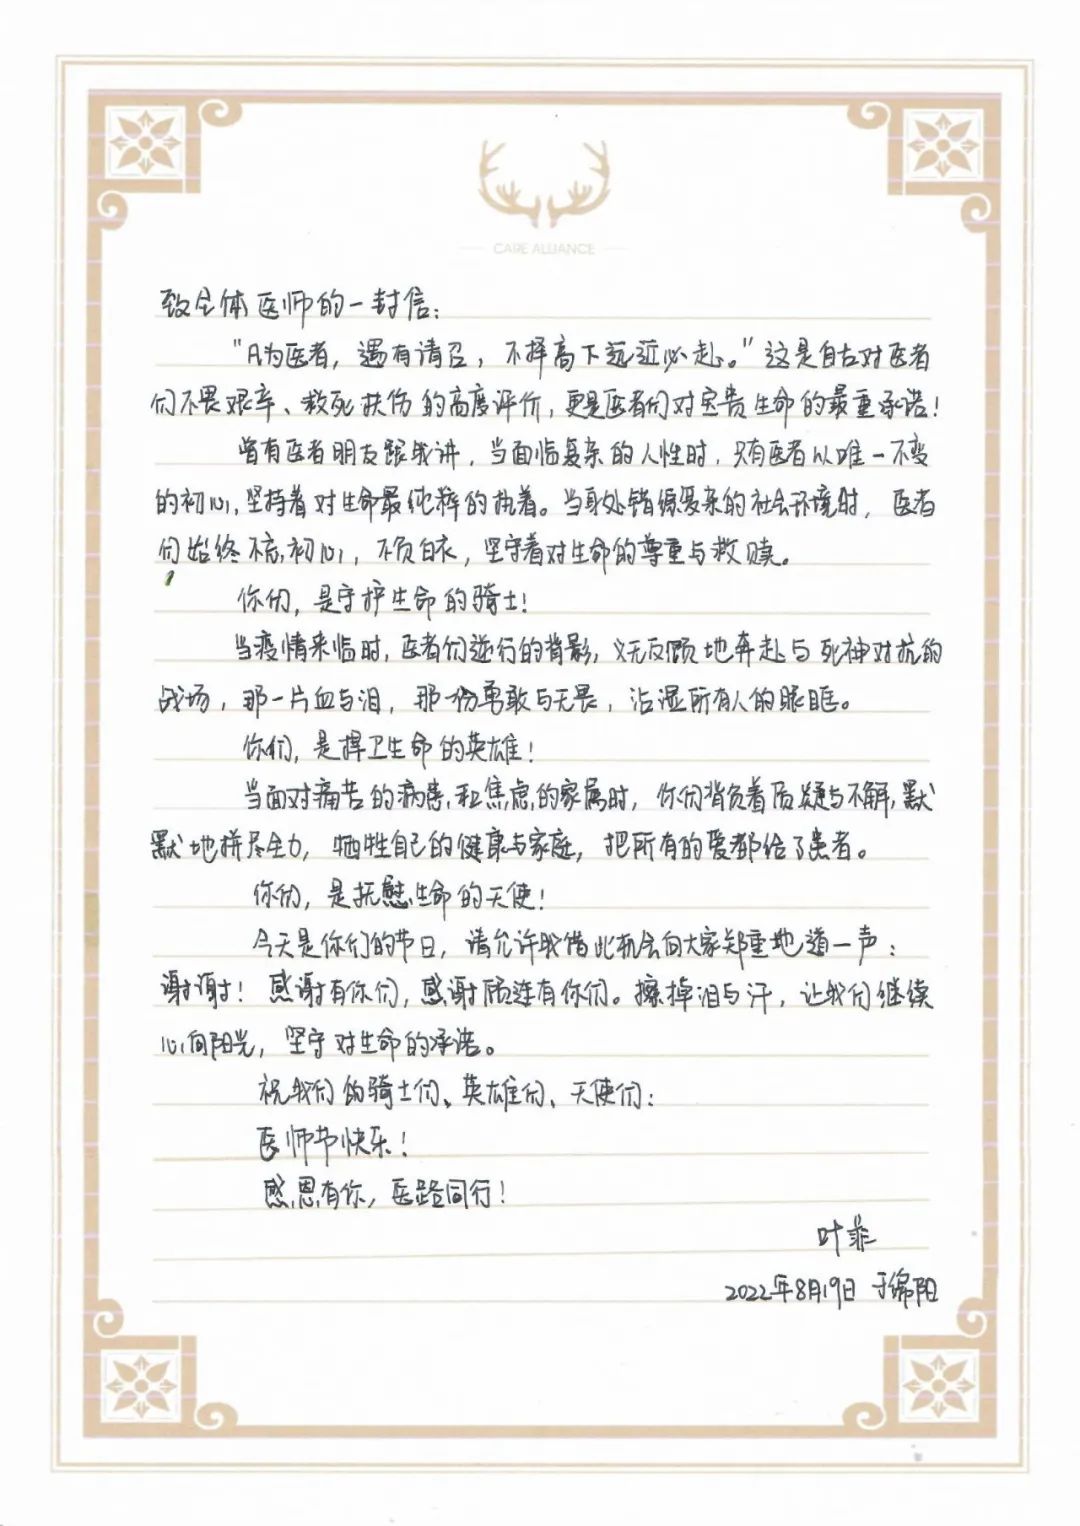 绵阳顾连康复医院院长兼总经理叶菲在医师节上致医师的一封信